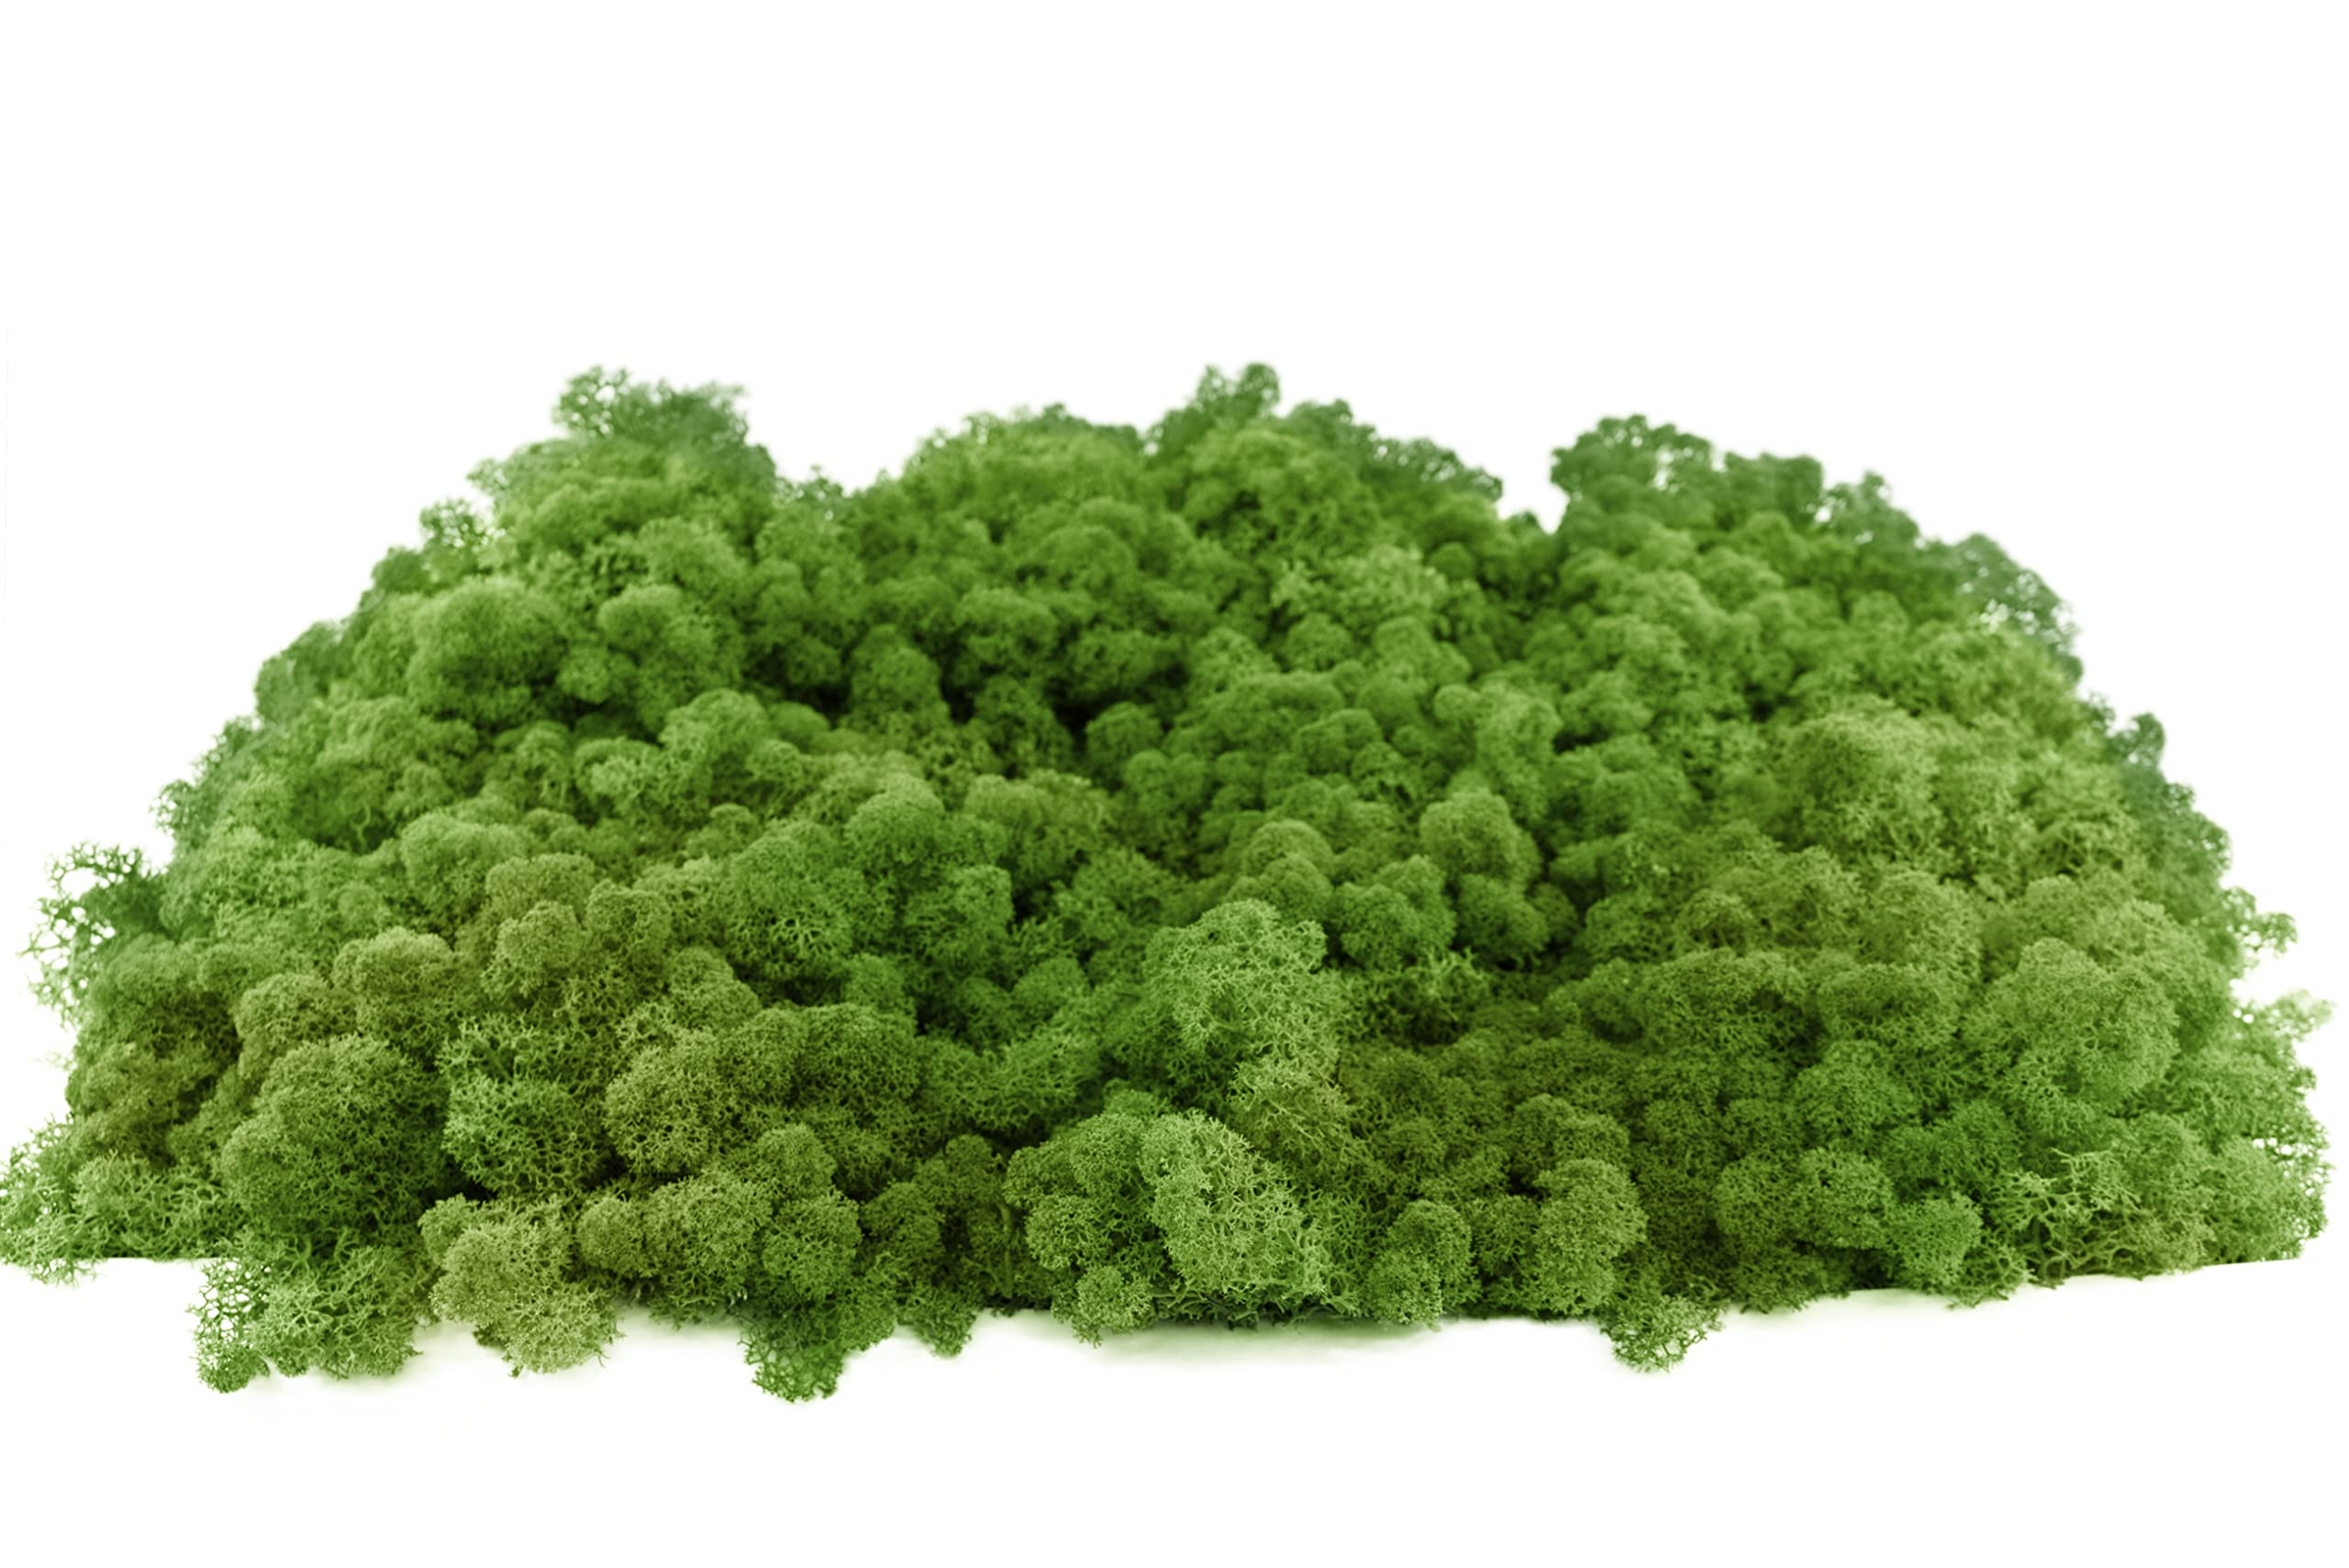 INMO Moos - Islandmoos echtes Natur Moos konserviert 4 KG Waldgrün. Dekomoos zum Basteln, Moosbild, Wand-Bilder, Wanddeko, Modellbau weitere Farben und Mengen zur Auswahl 40g - 500g 1 KG - 4 KG